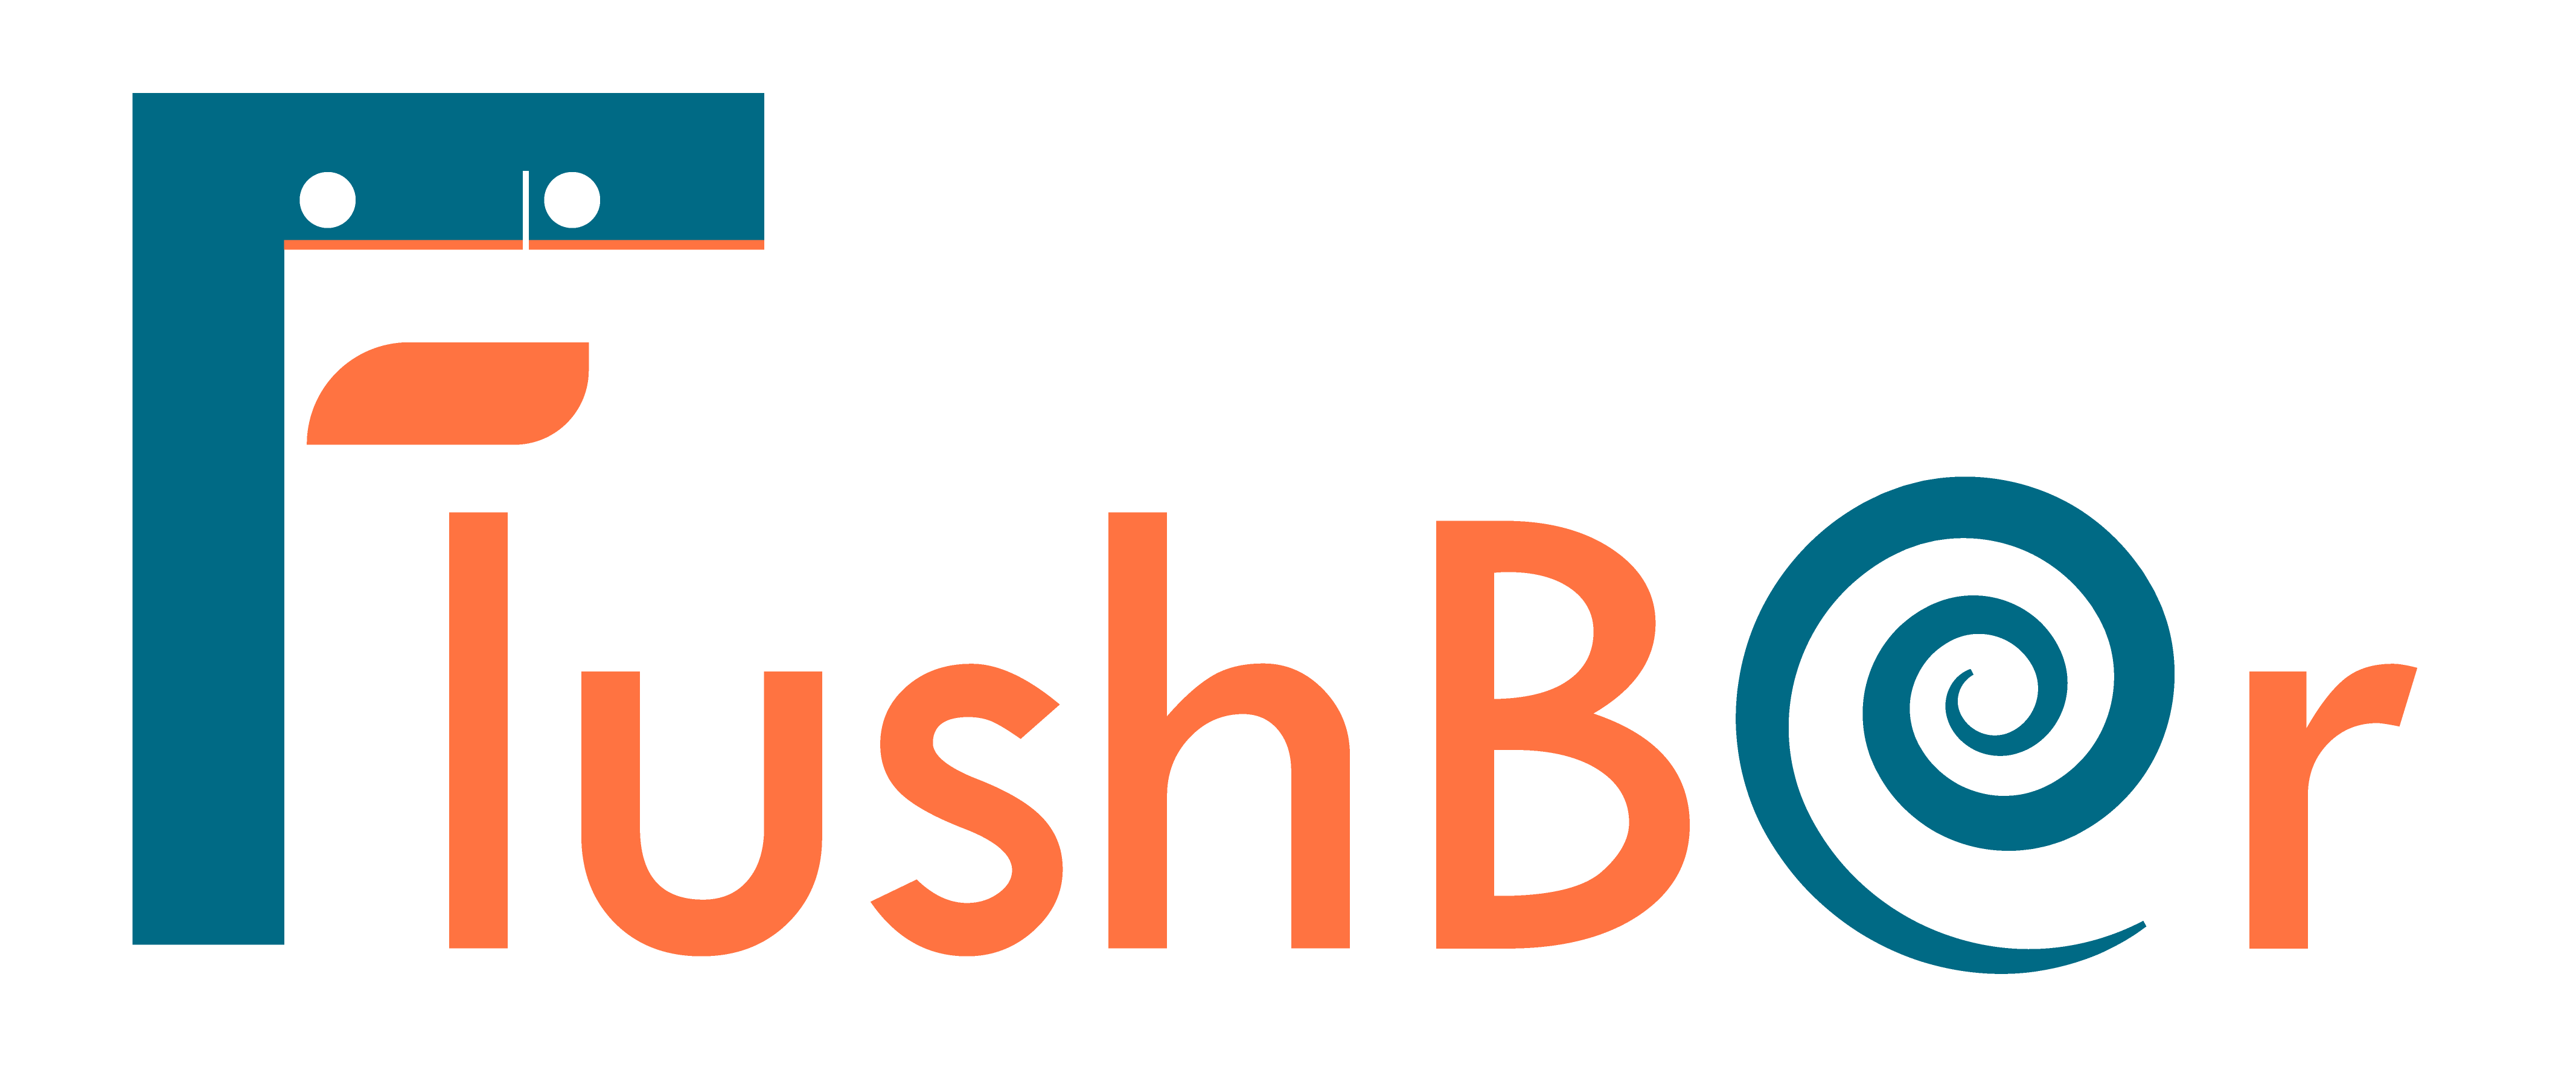 flushbar_logo